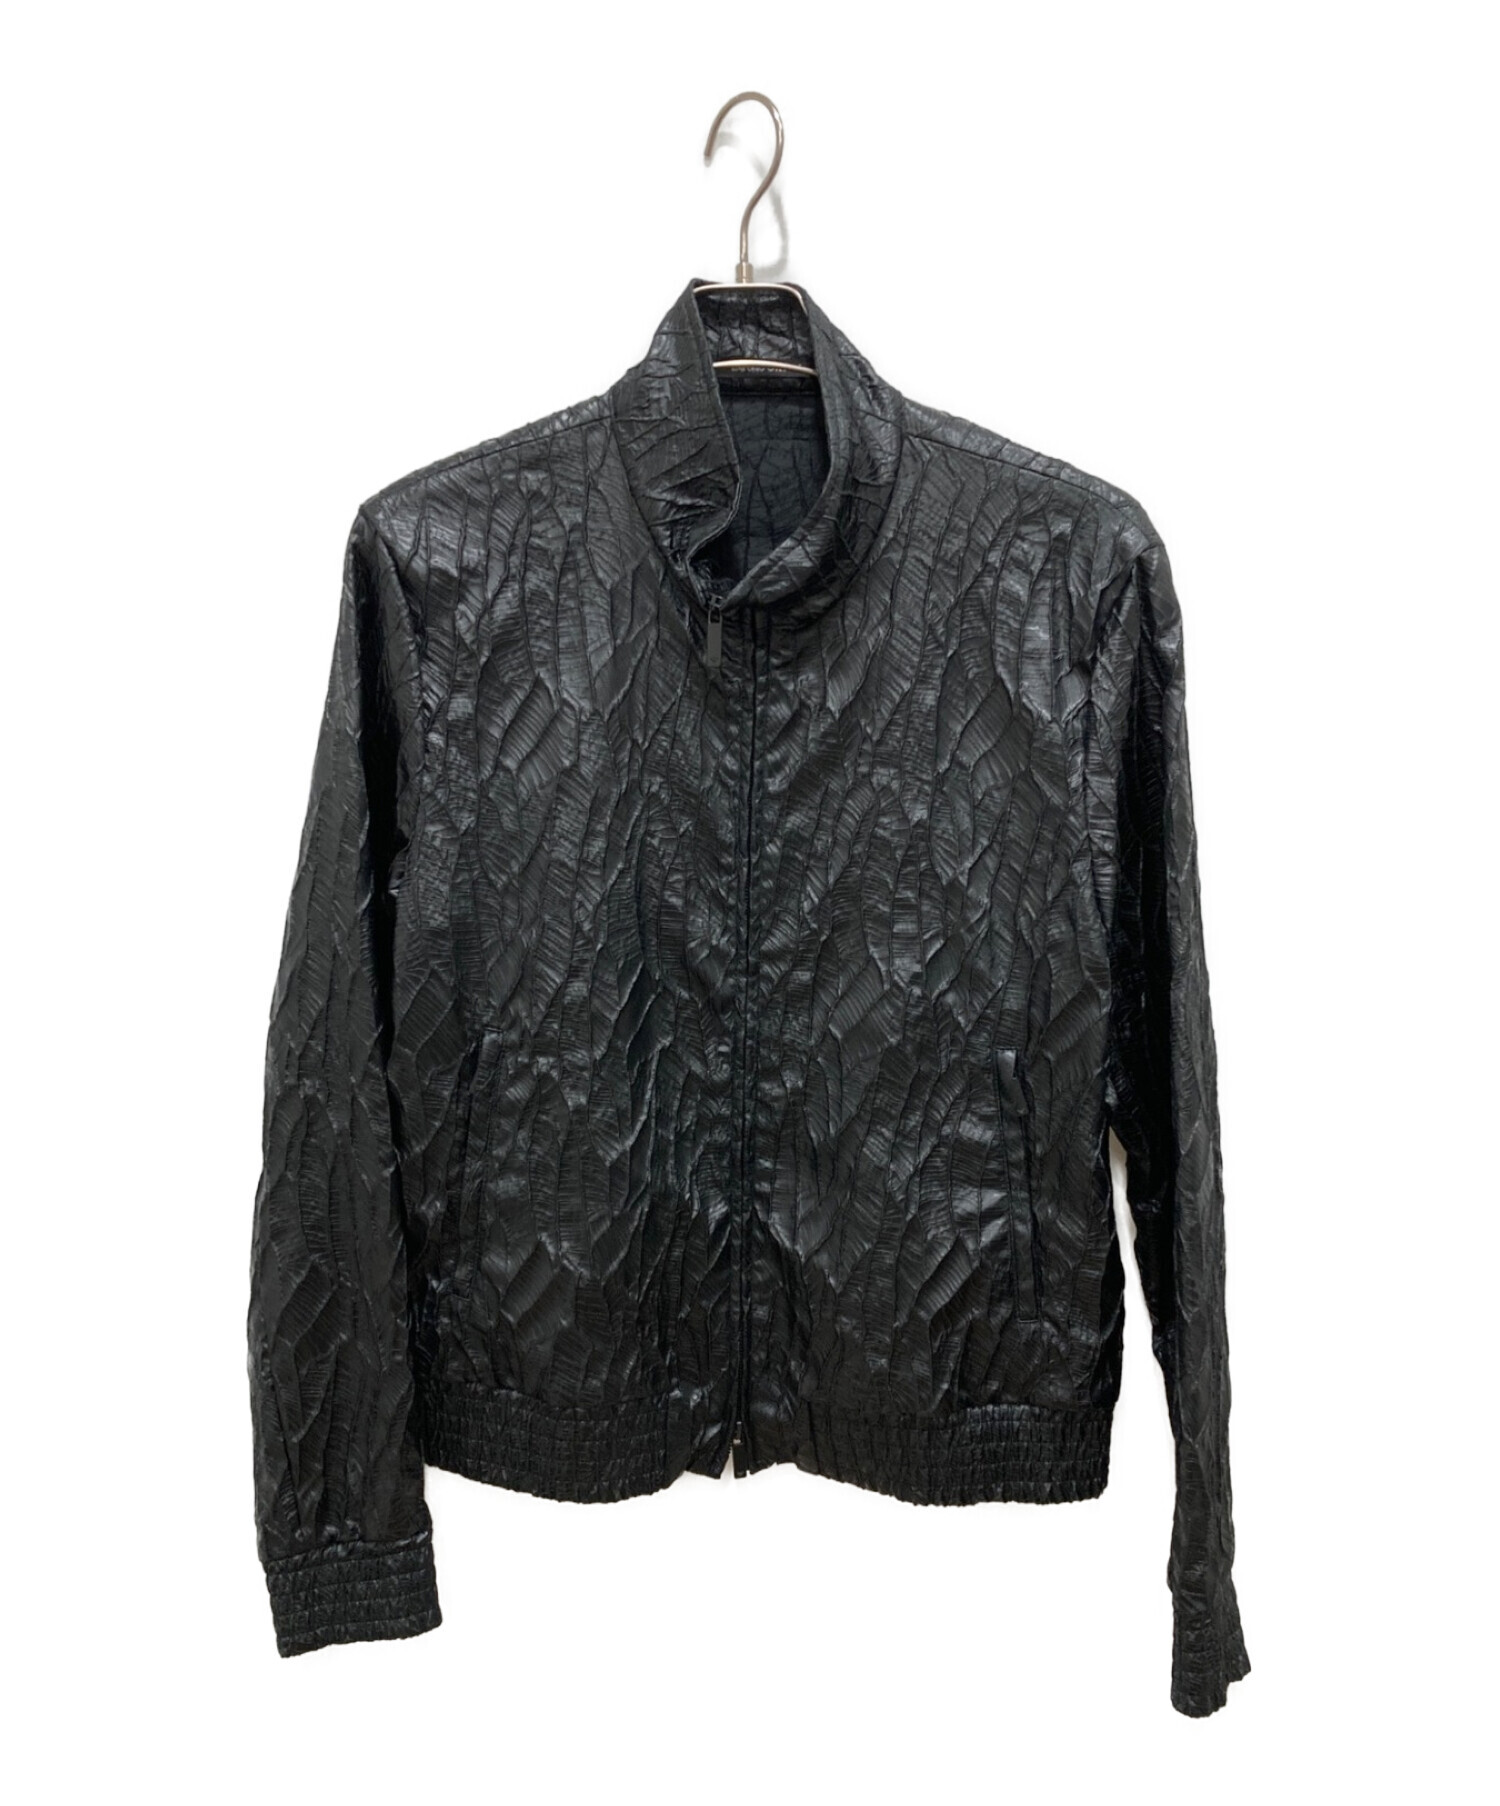 EMPORIO ARMANI (エンポリオアルマーニ) ジップジャケット ブラック サイズ:size 50